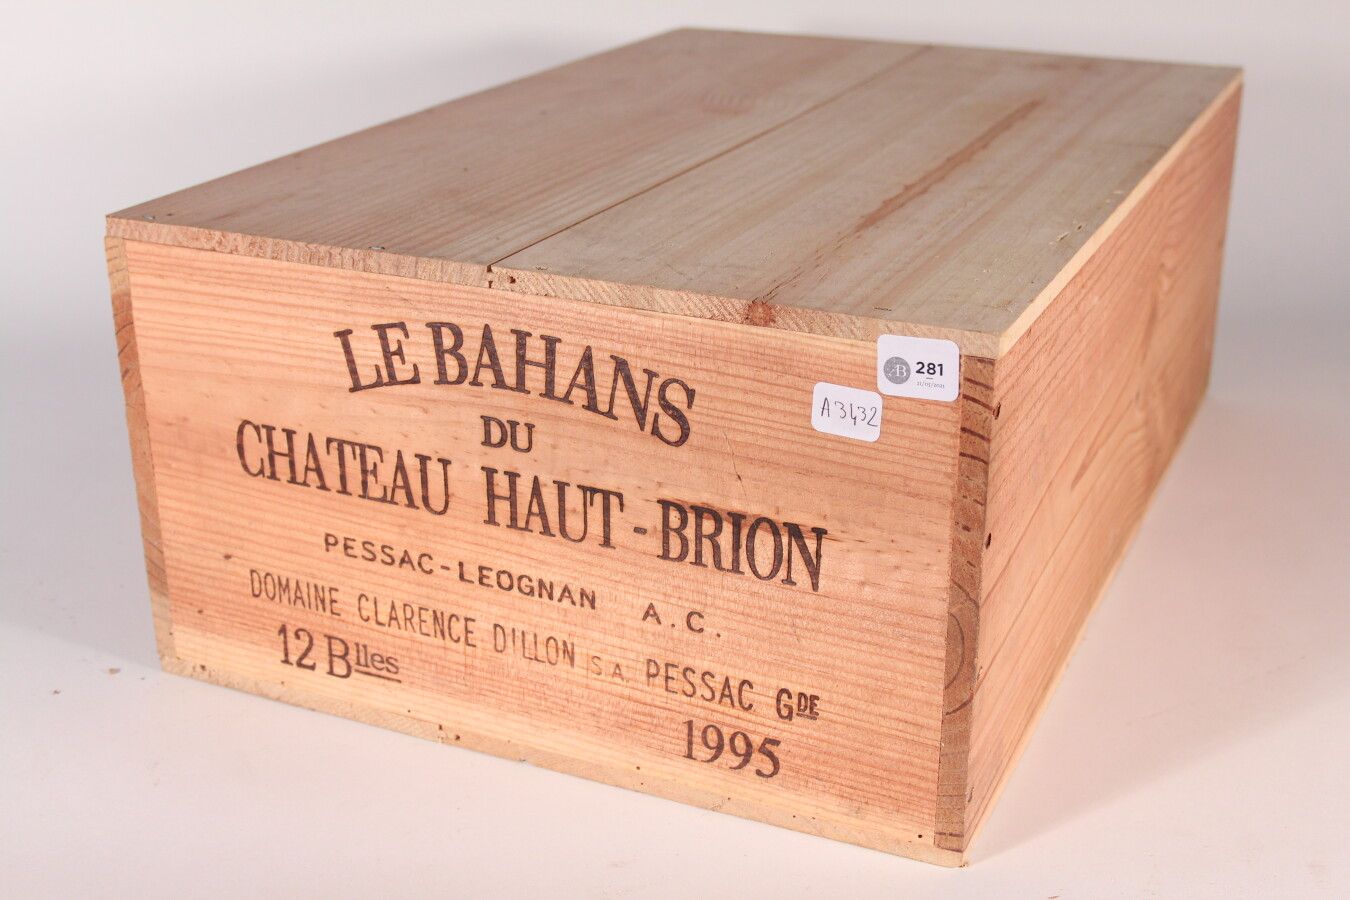 Null 1995 - Bahans Haut Brion

Pessac-Léognan Rouge - 12 blles